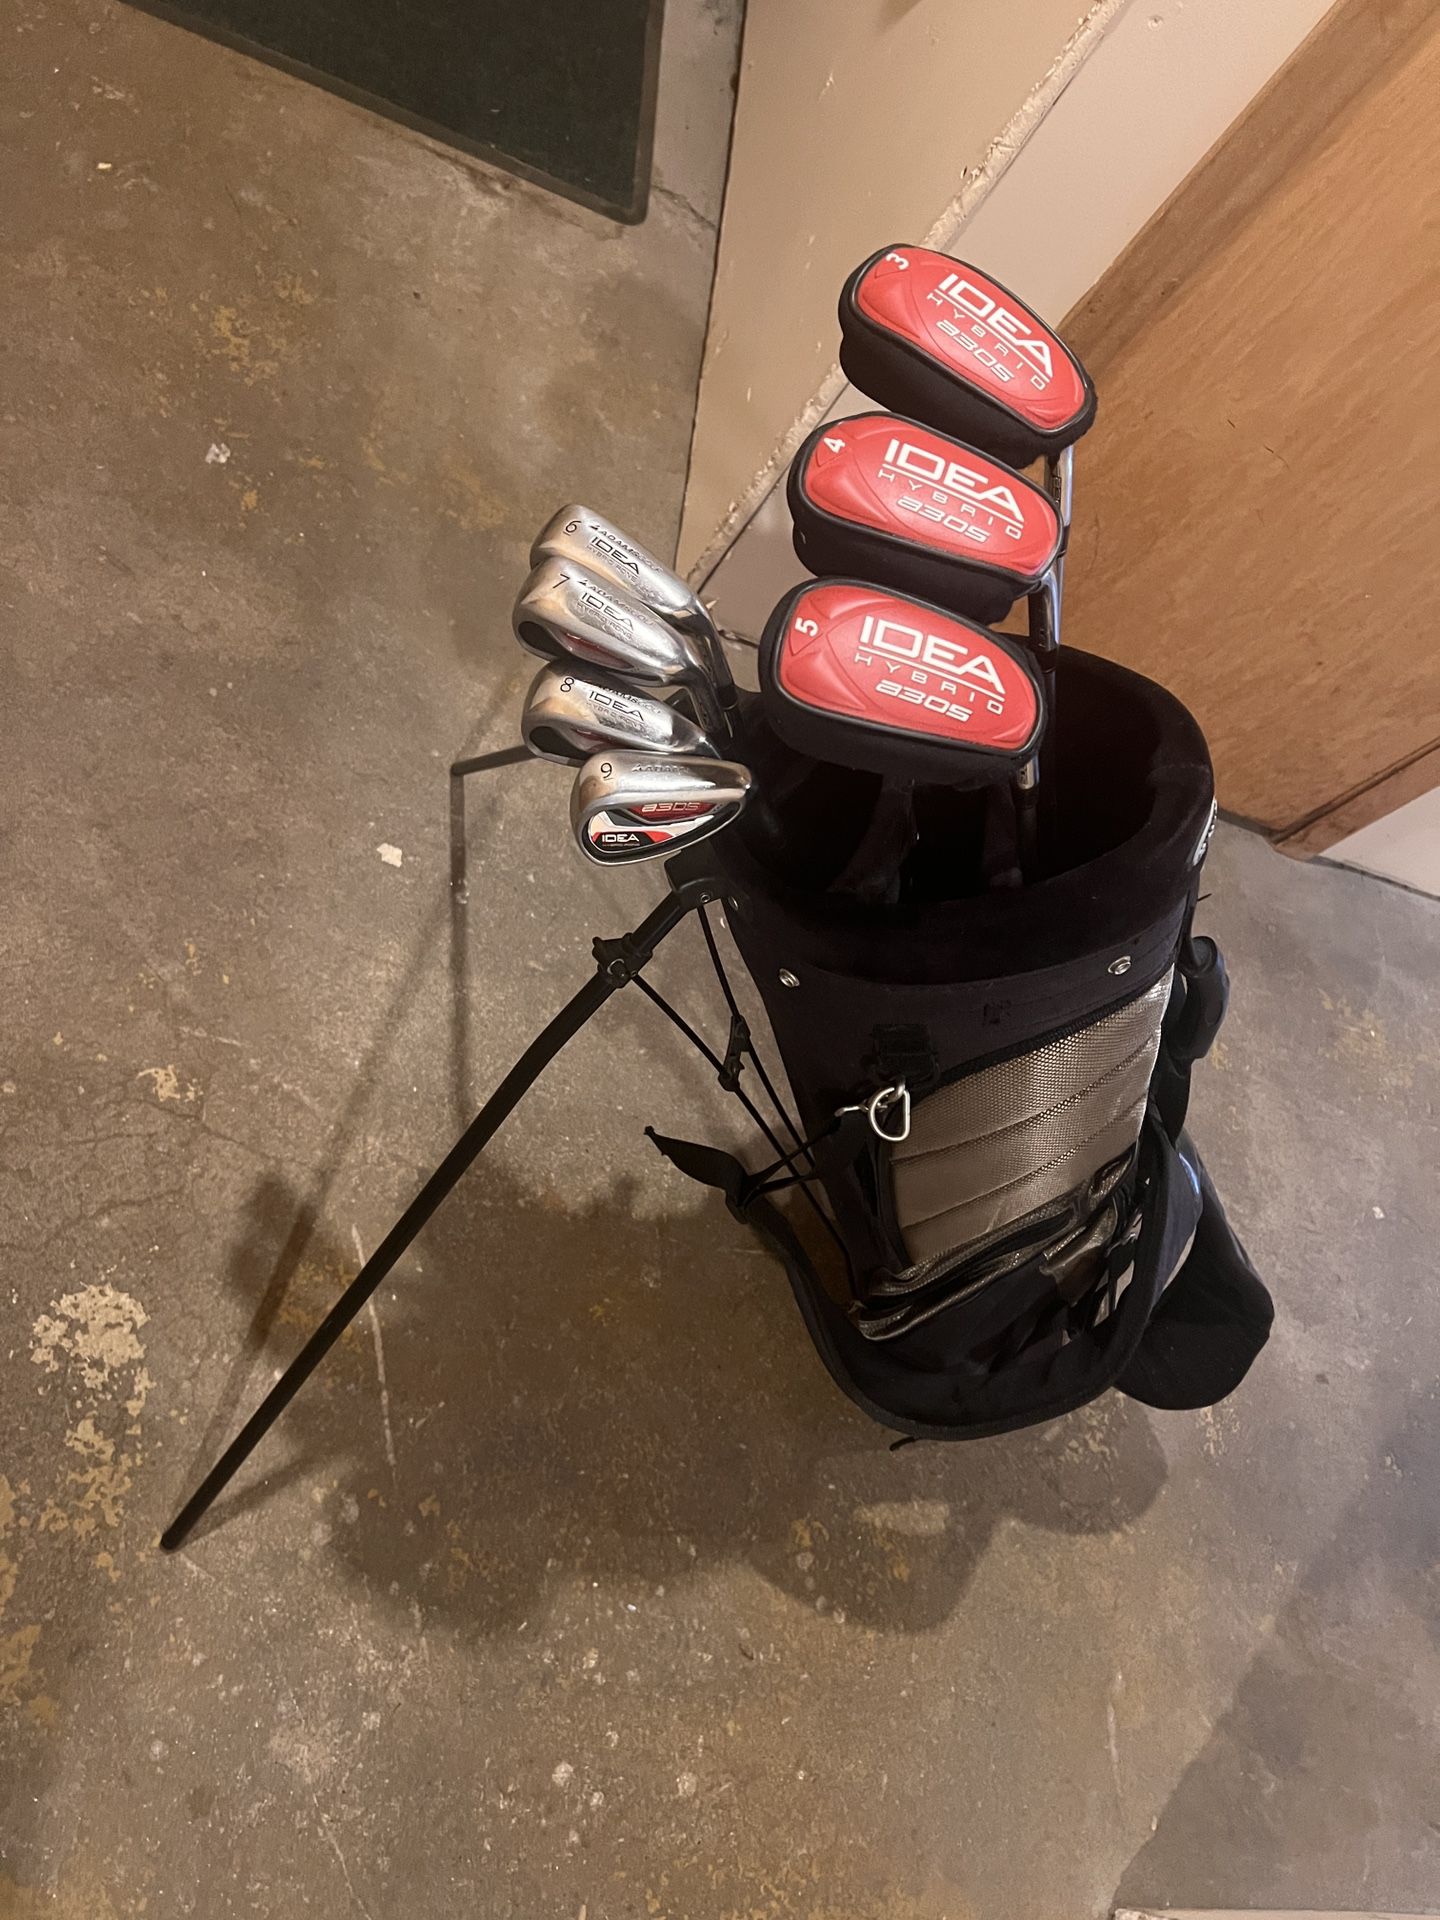 Adams Golf Irons and Bag